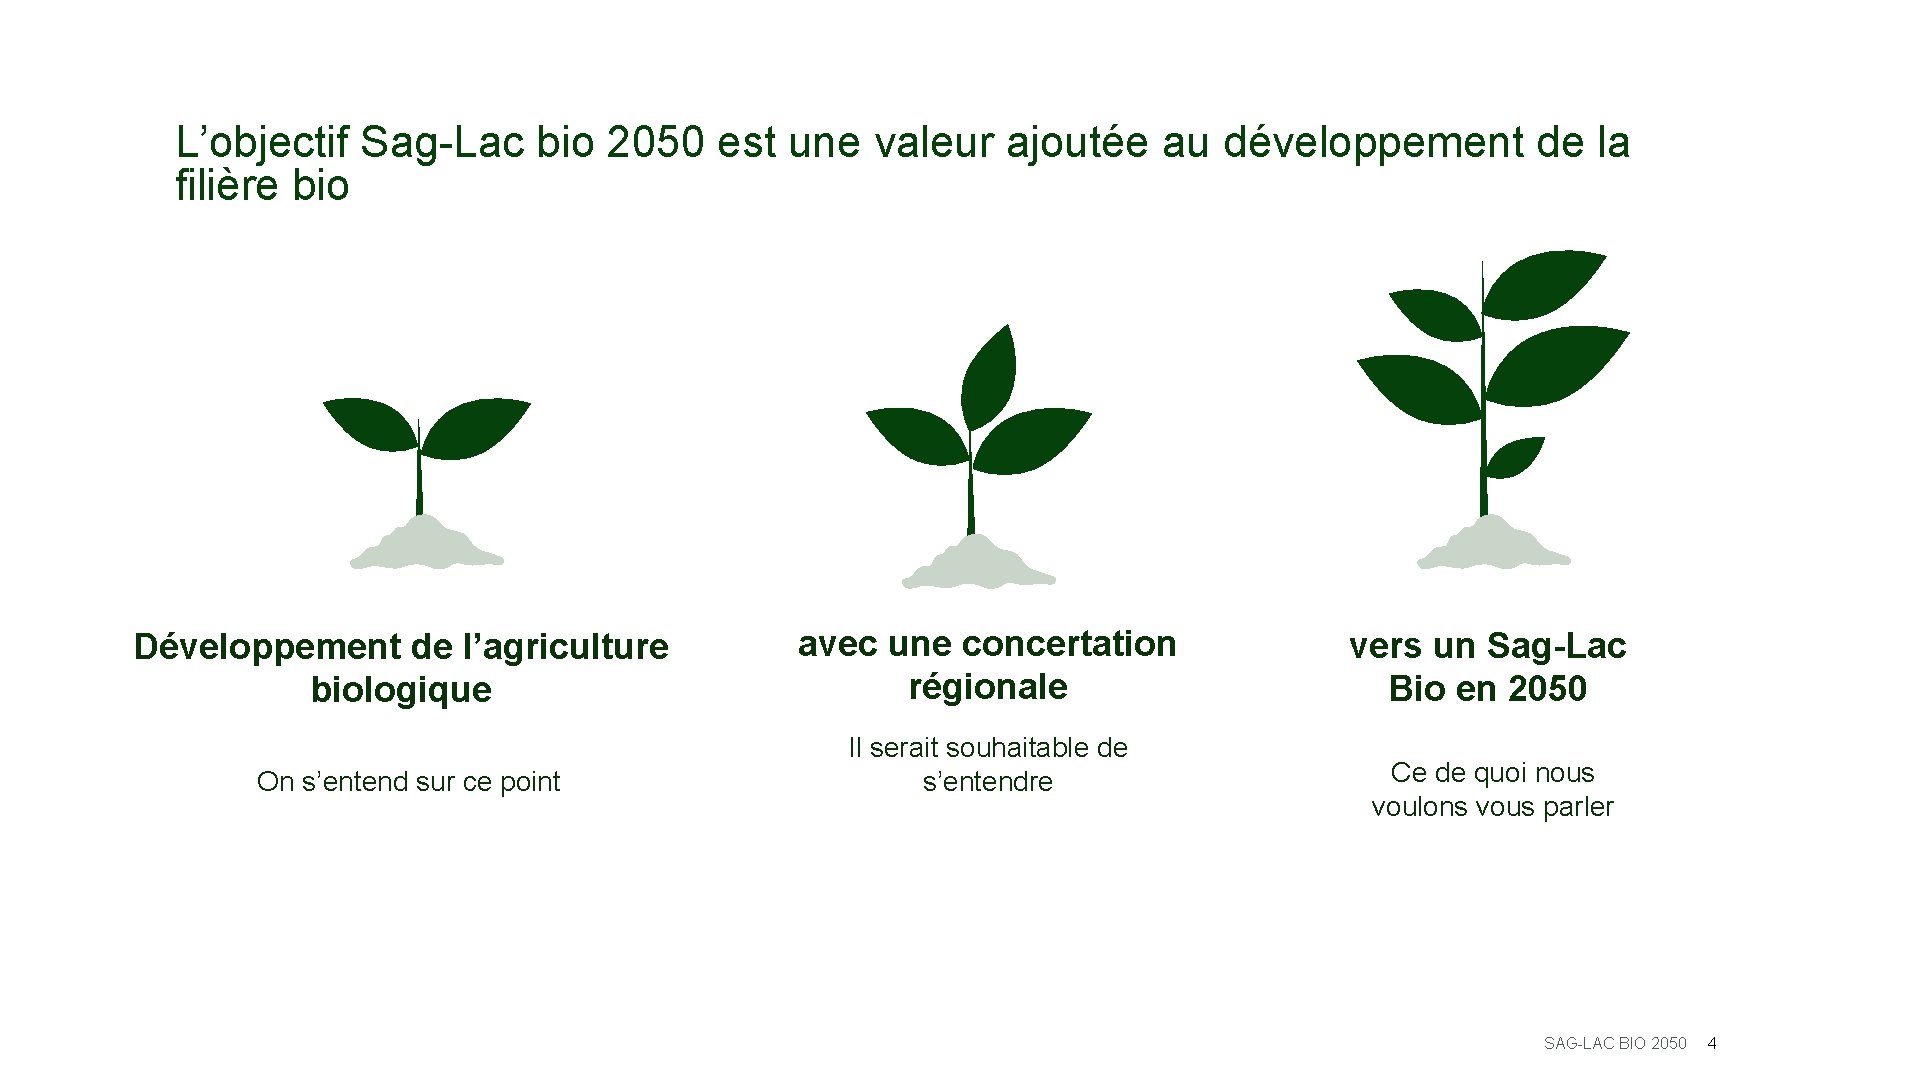 L’objectif Sag-Lac bio 2050 est une valeur ajoutée au développement de la filière bio